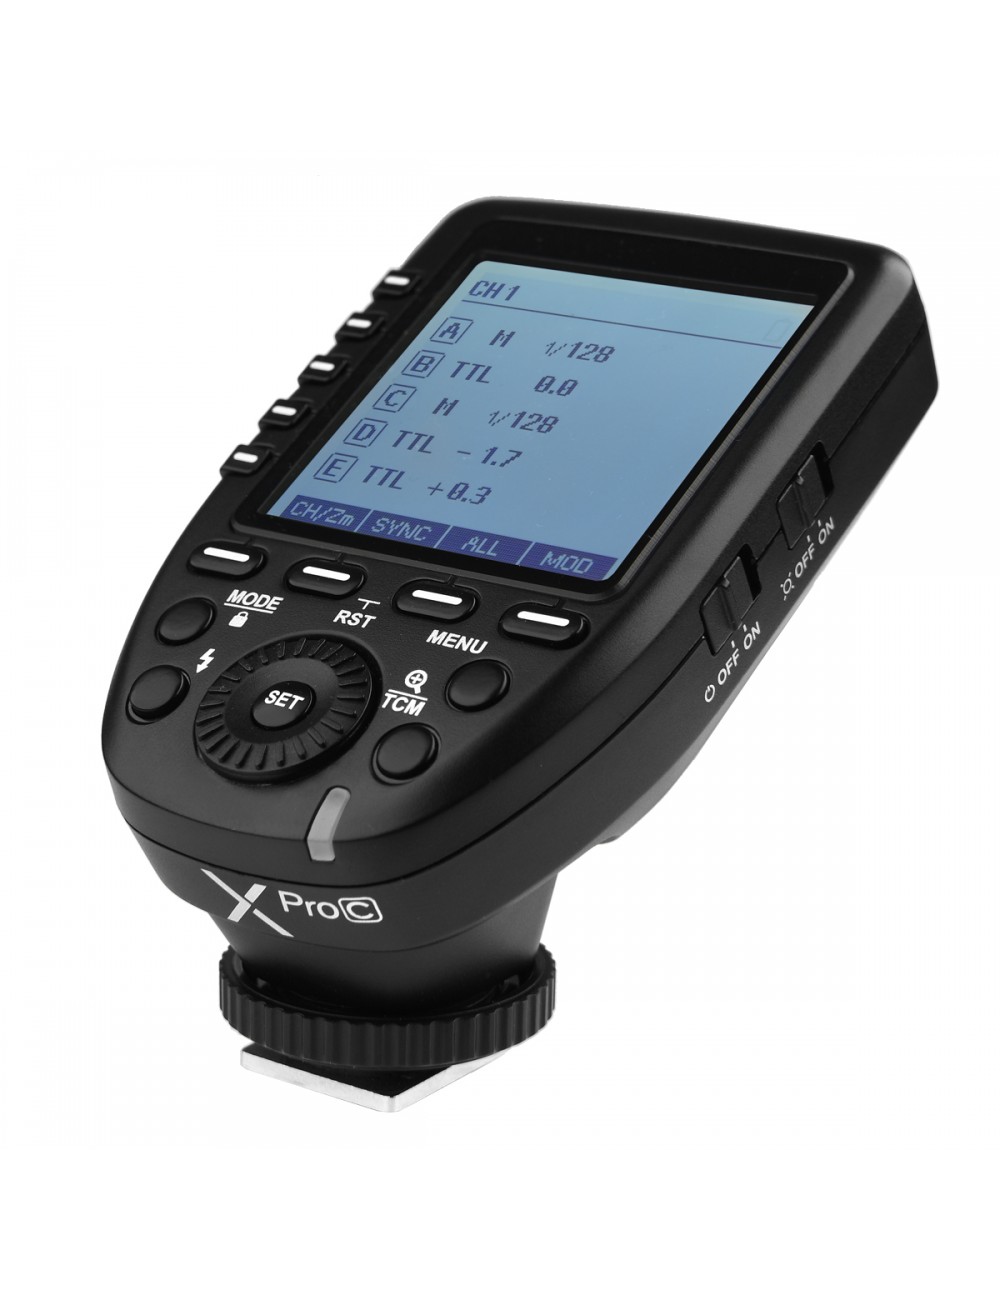 GODOX XPRO Radio Trasmettitore Canon